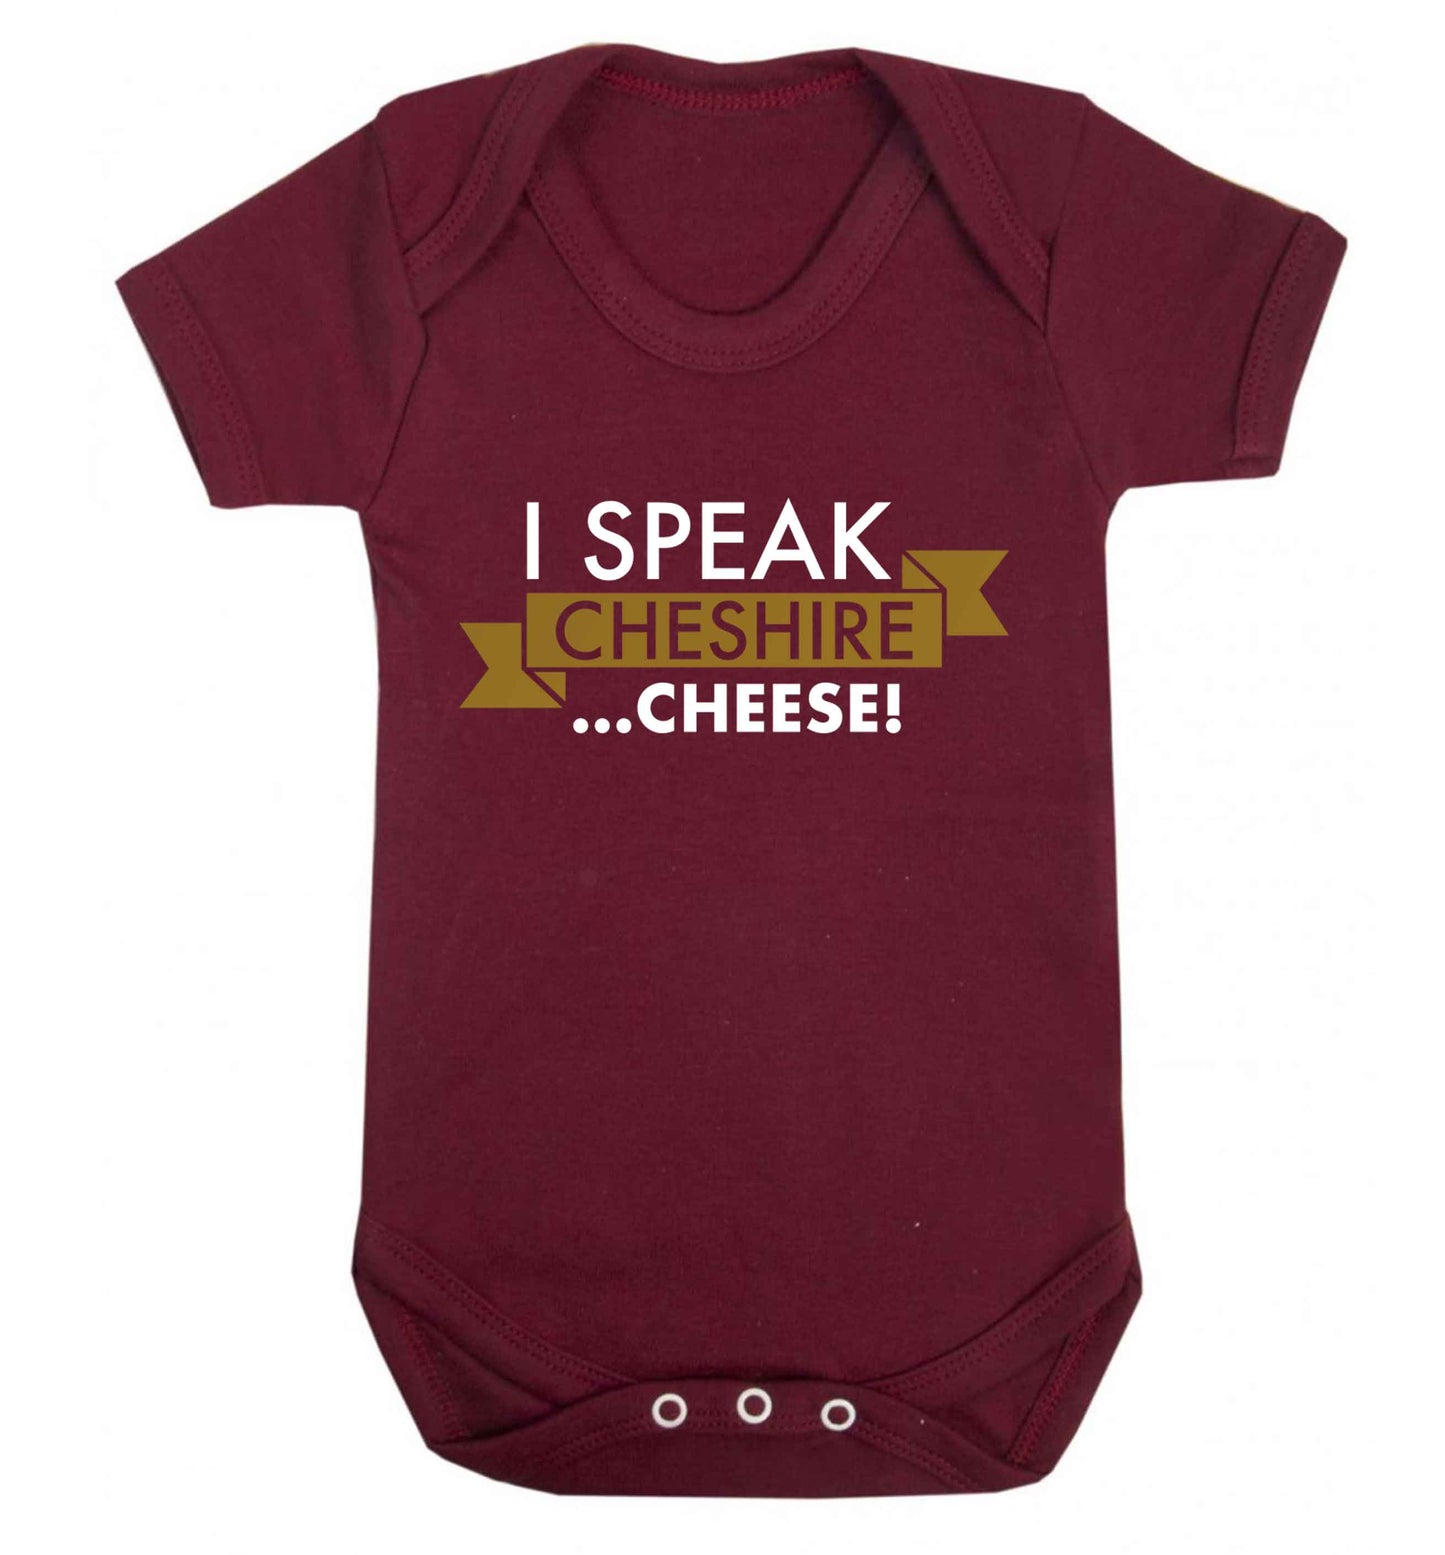 I speak Cheshire cheese Baby Vest maroon 18-24 months